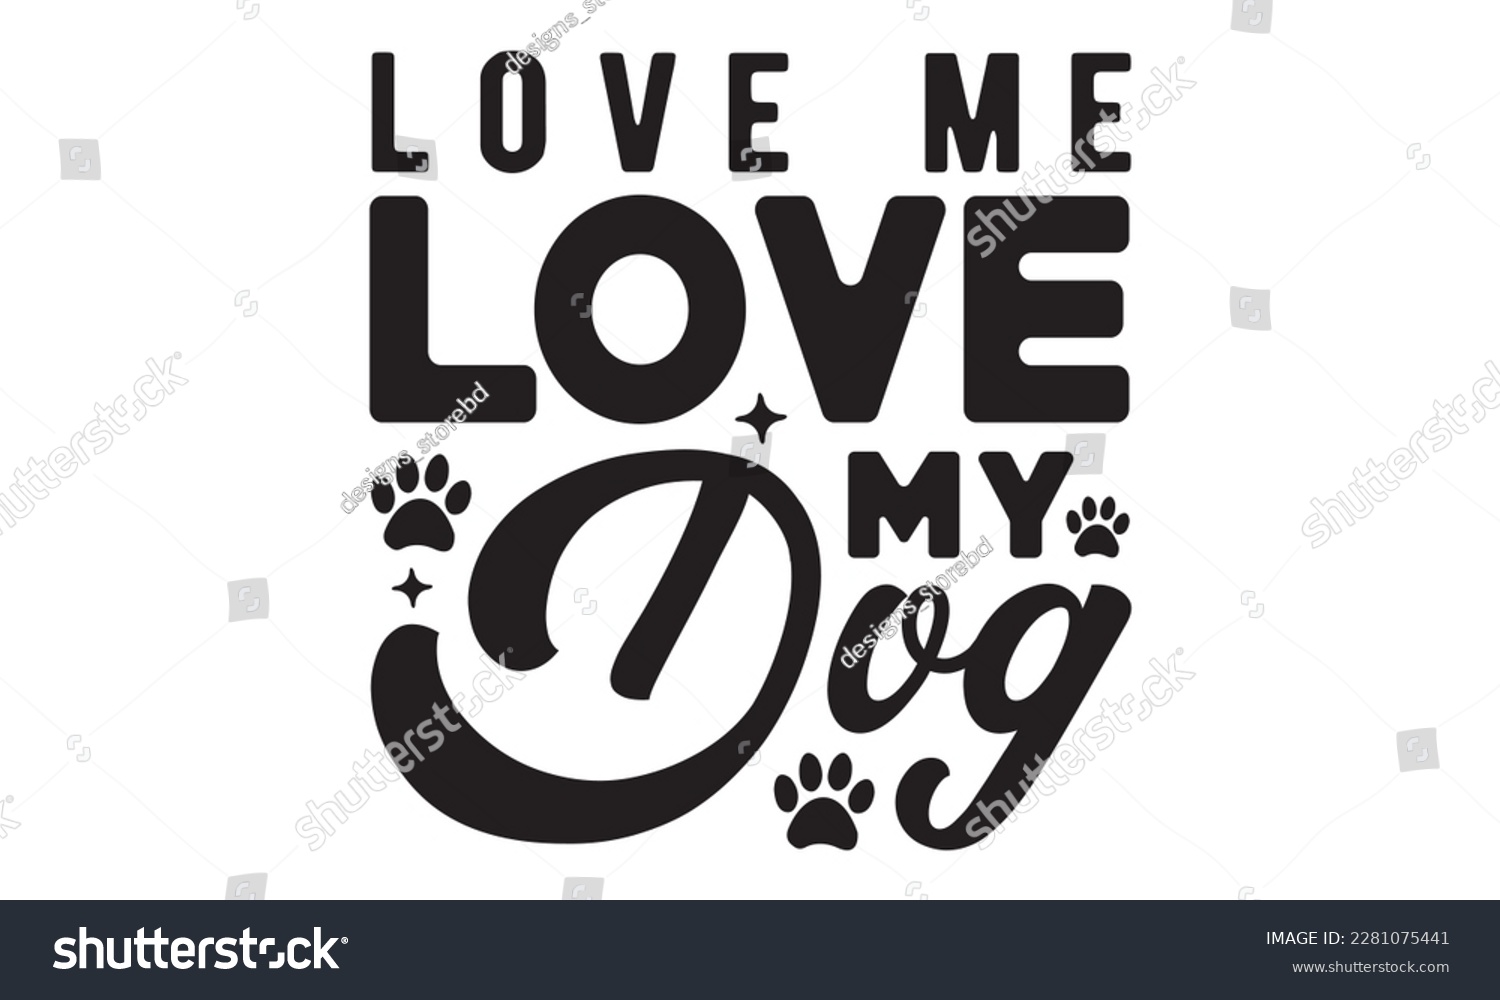 SVG of Love me love my dog svg ,dog SVG Bundle, dog SVG design bundle and  t-shirt design, Funny Dog Quotes SVG Designs and cut files, fur mom, animal design, animal lover svg